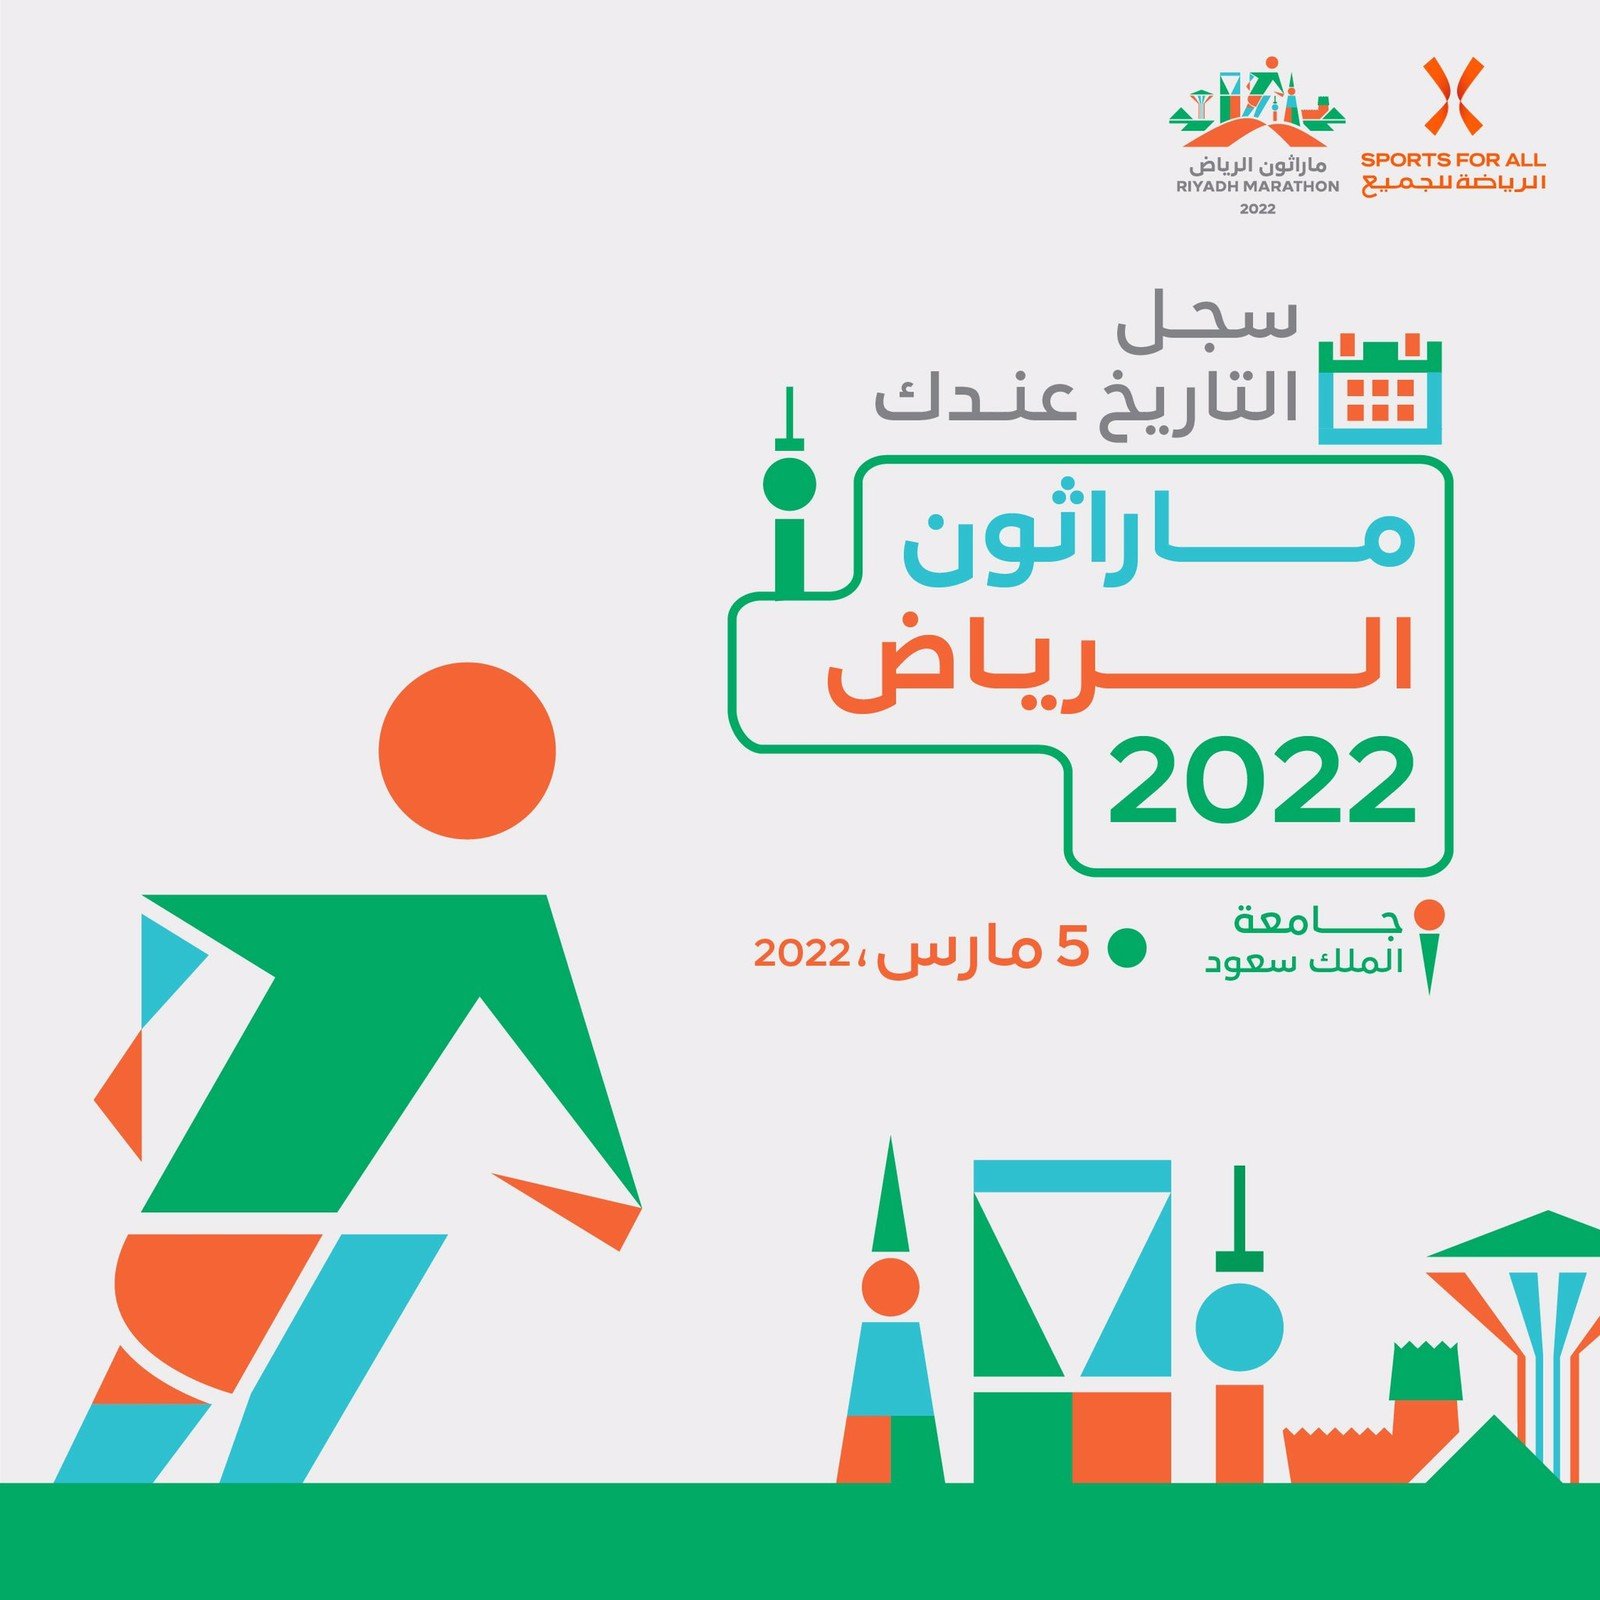 السعودية تعلن عن انطلاق ماراثون الرياض 2022 بمشاركة العديد من مختلف الجنسيات